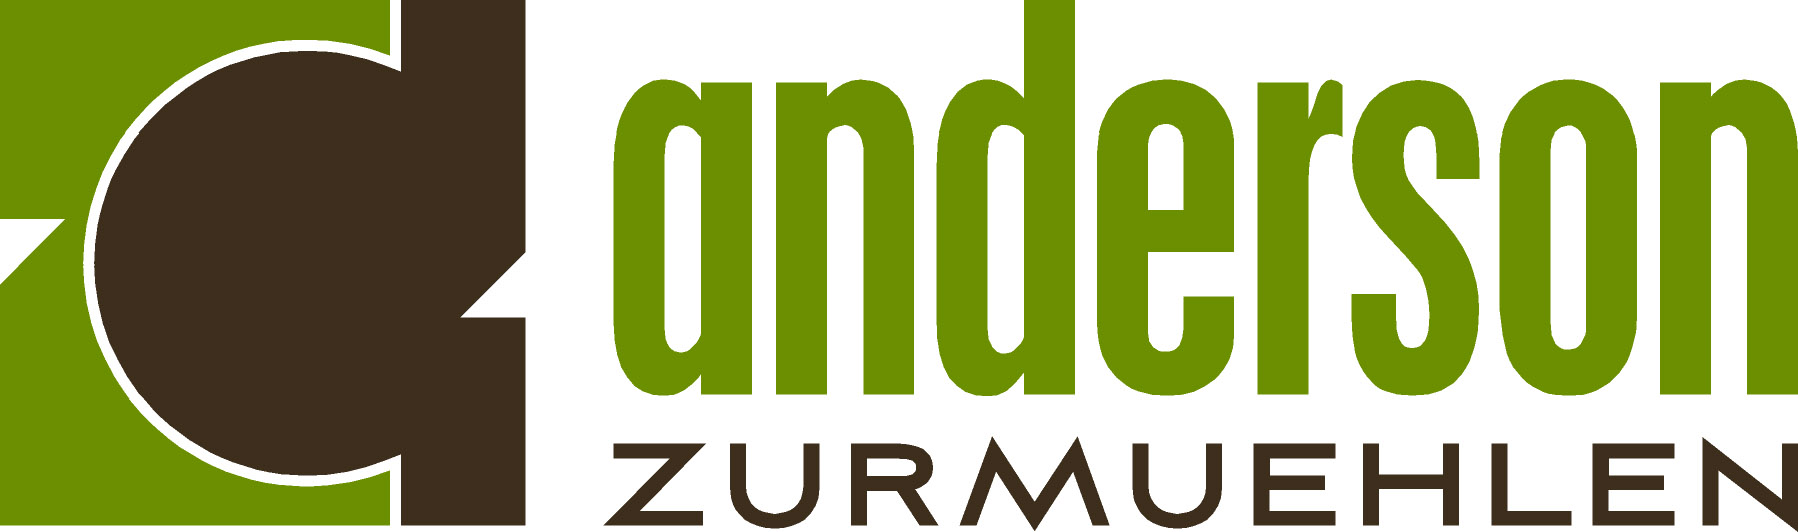 anderson_zurmuehlen_logo.jpg